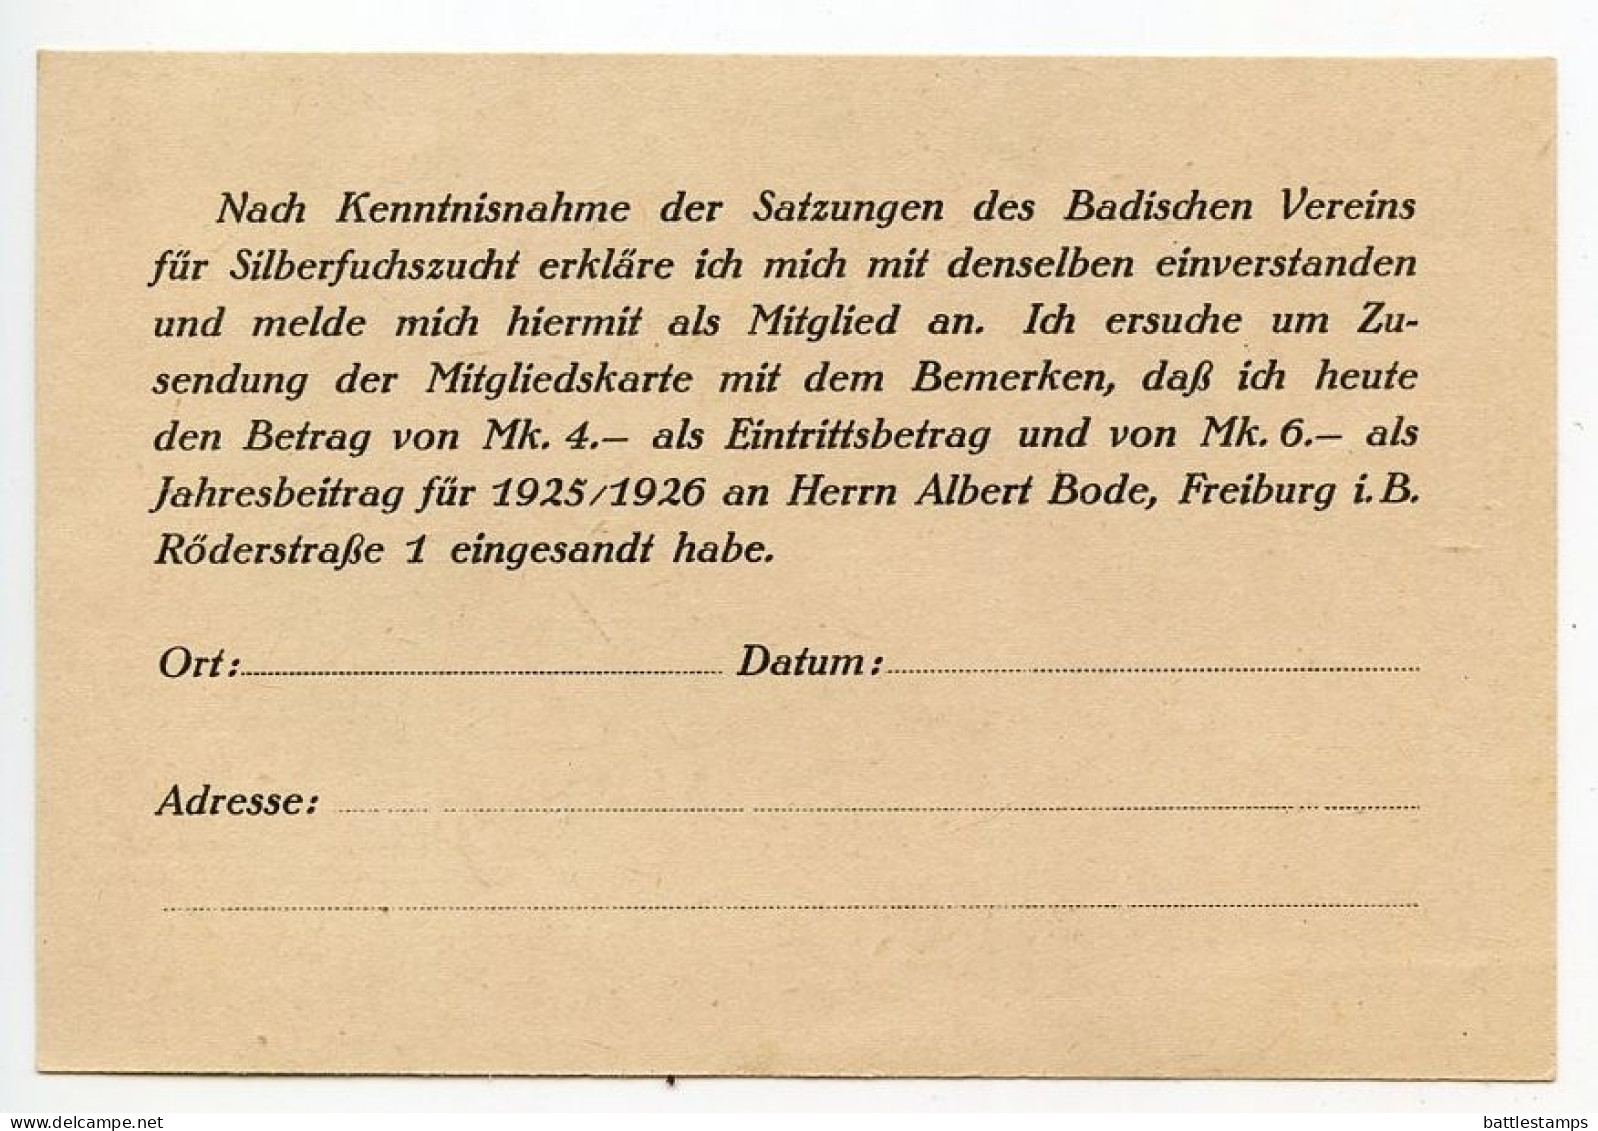 Germany 1925 Cover w/ Document; Freiburg (Breuisgau) - Badischer Verein für Silberfuchszucht; 3pf. German Eagle